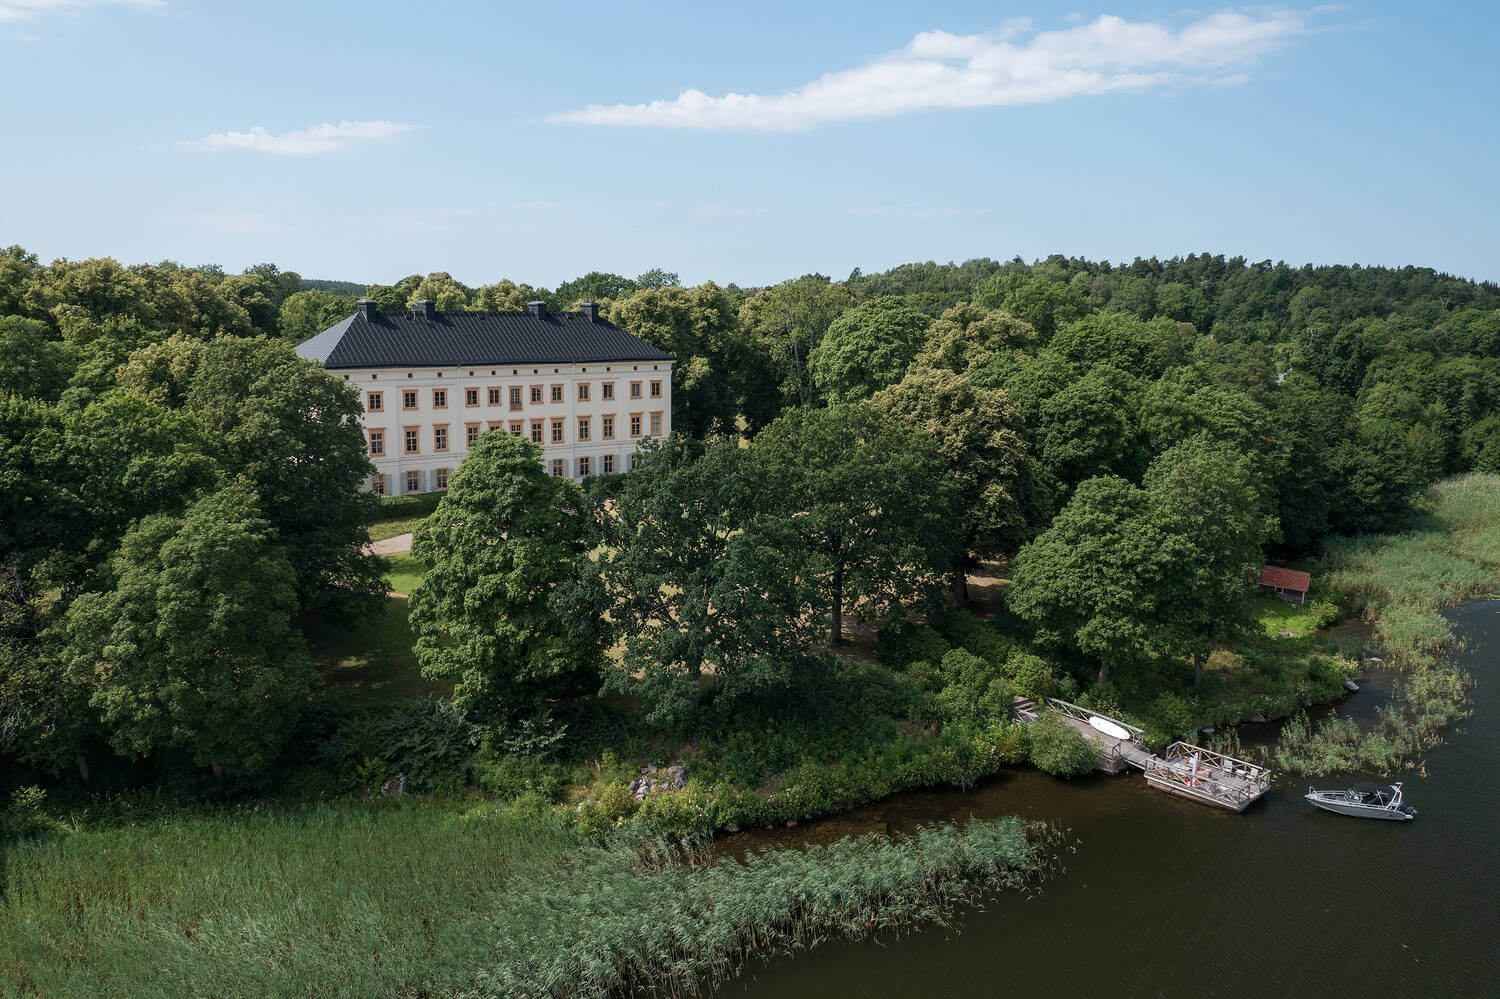 Жизнь в истории: как выглядит стильная серая квартира в шведском замке - Дизайн 24